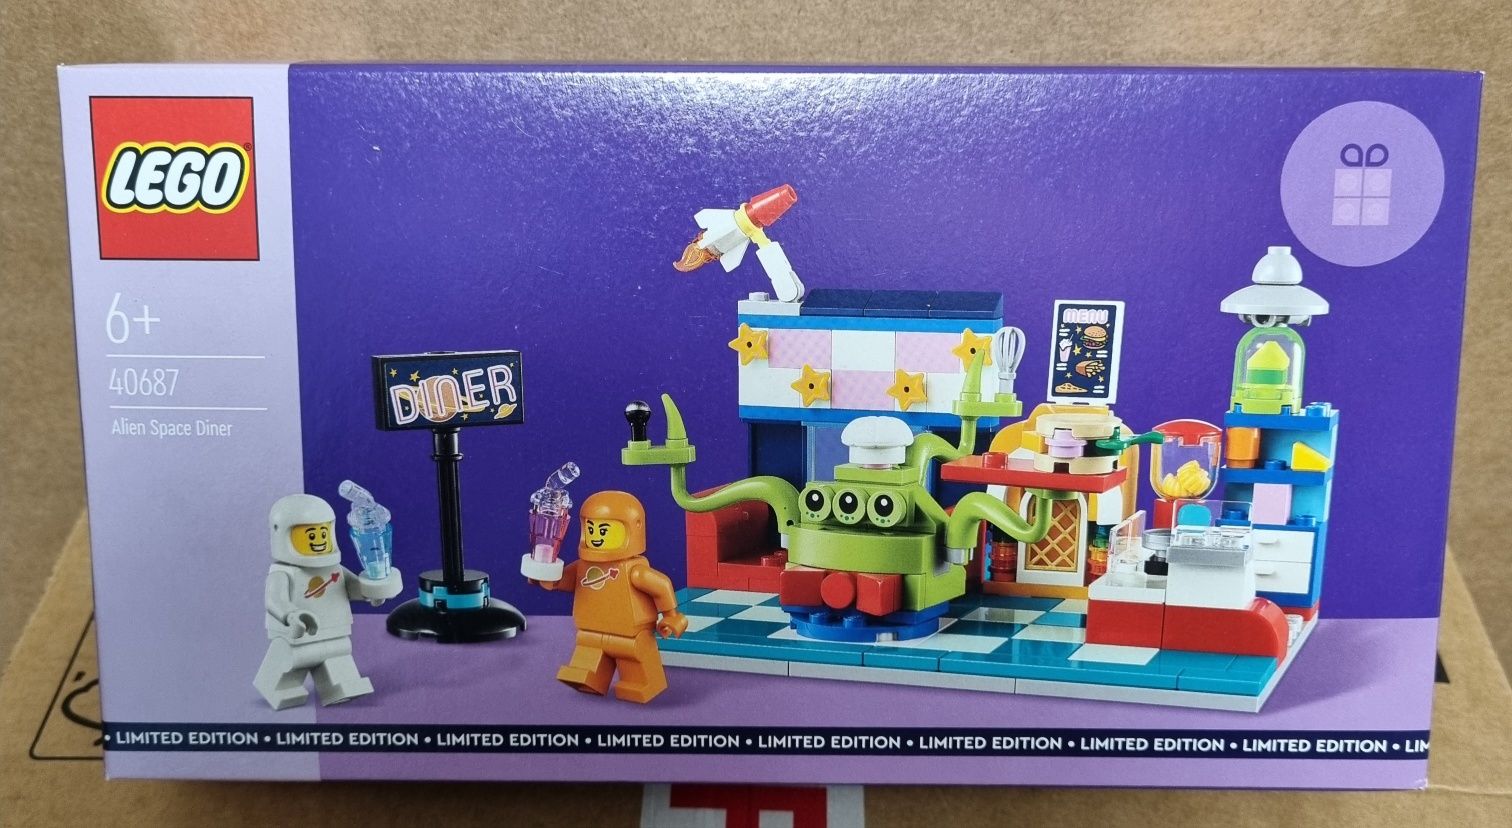 Lego 40687 Alien Space Diner